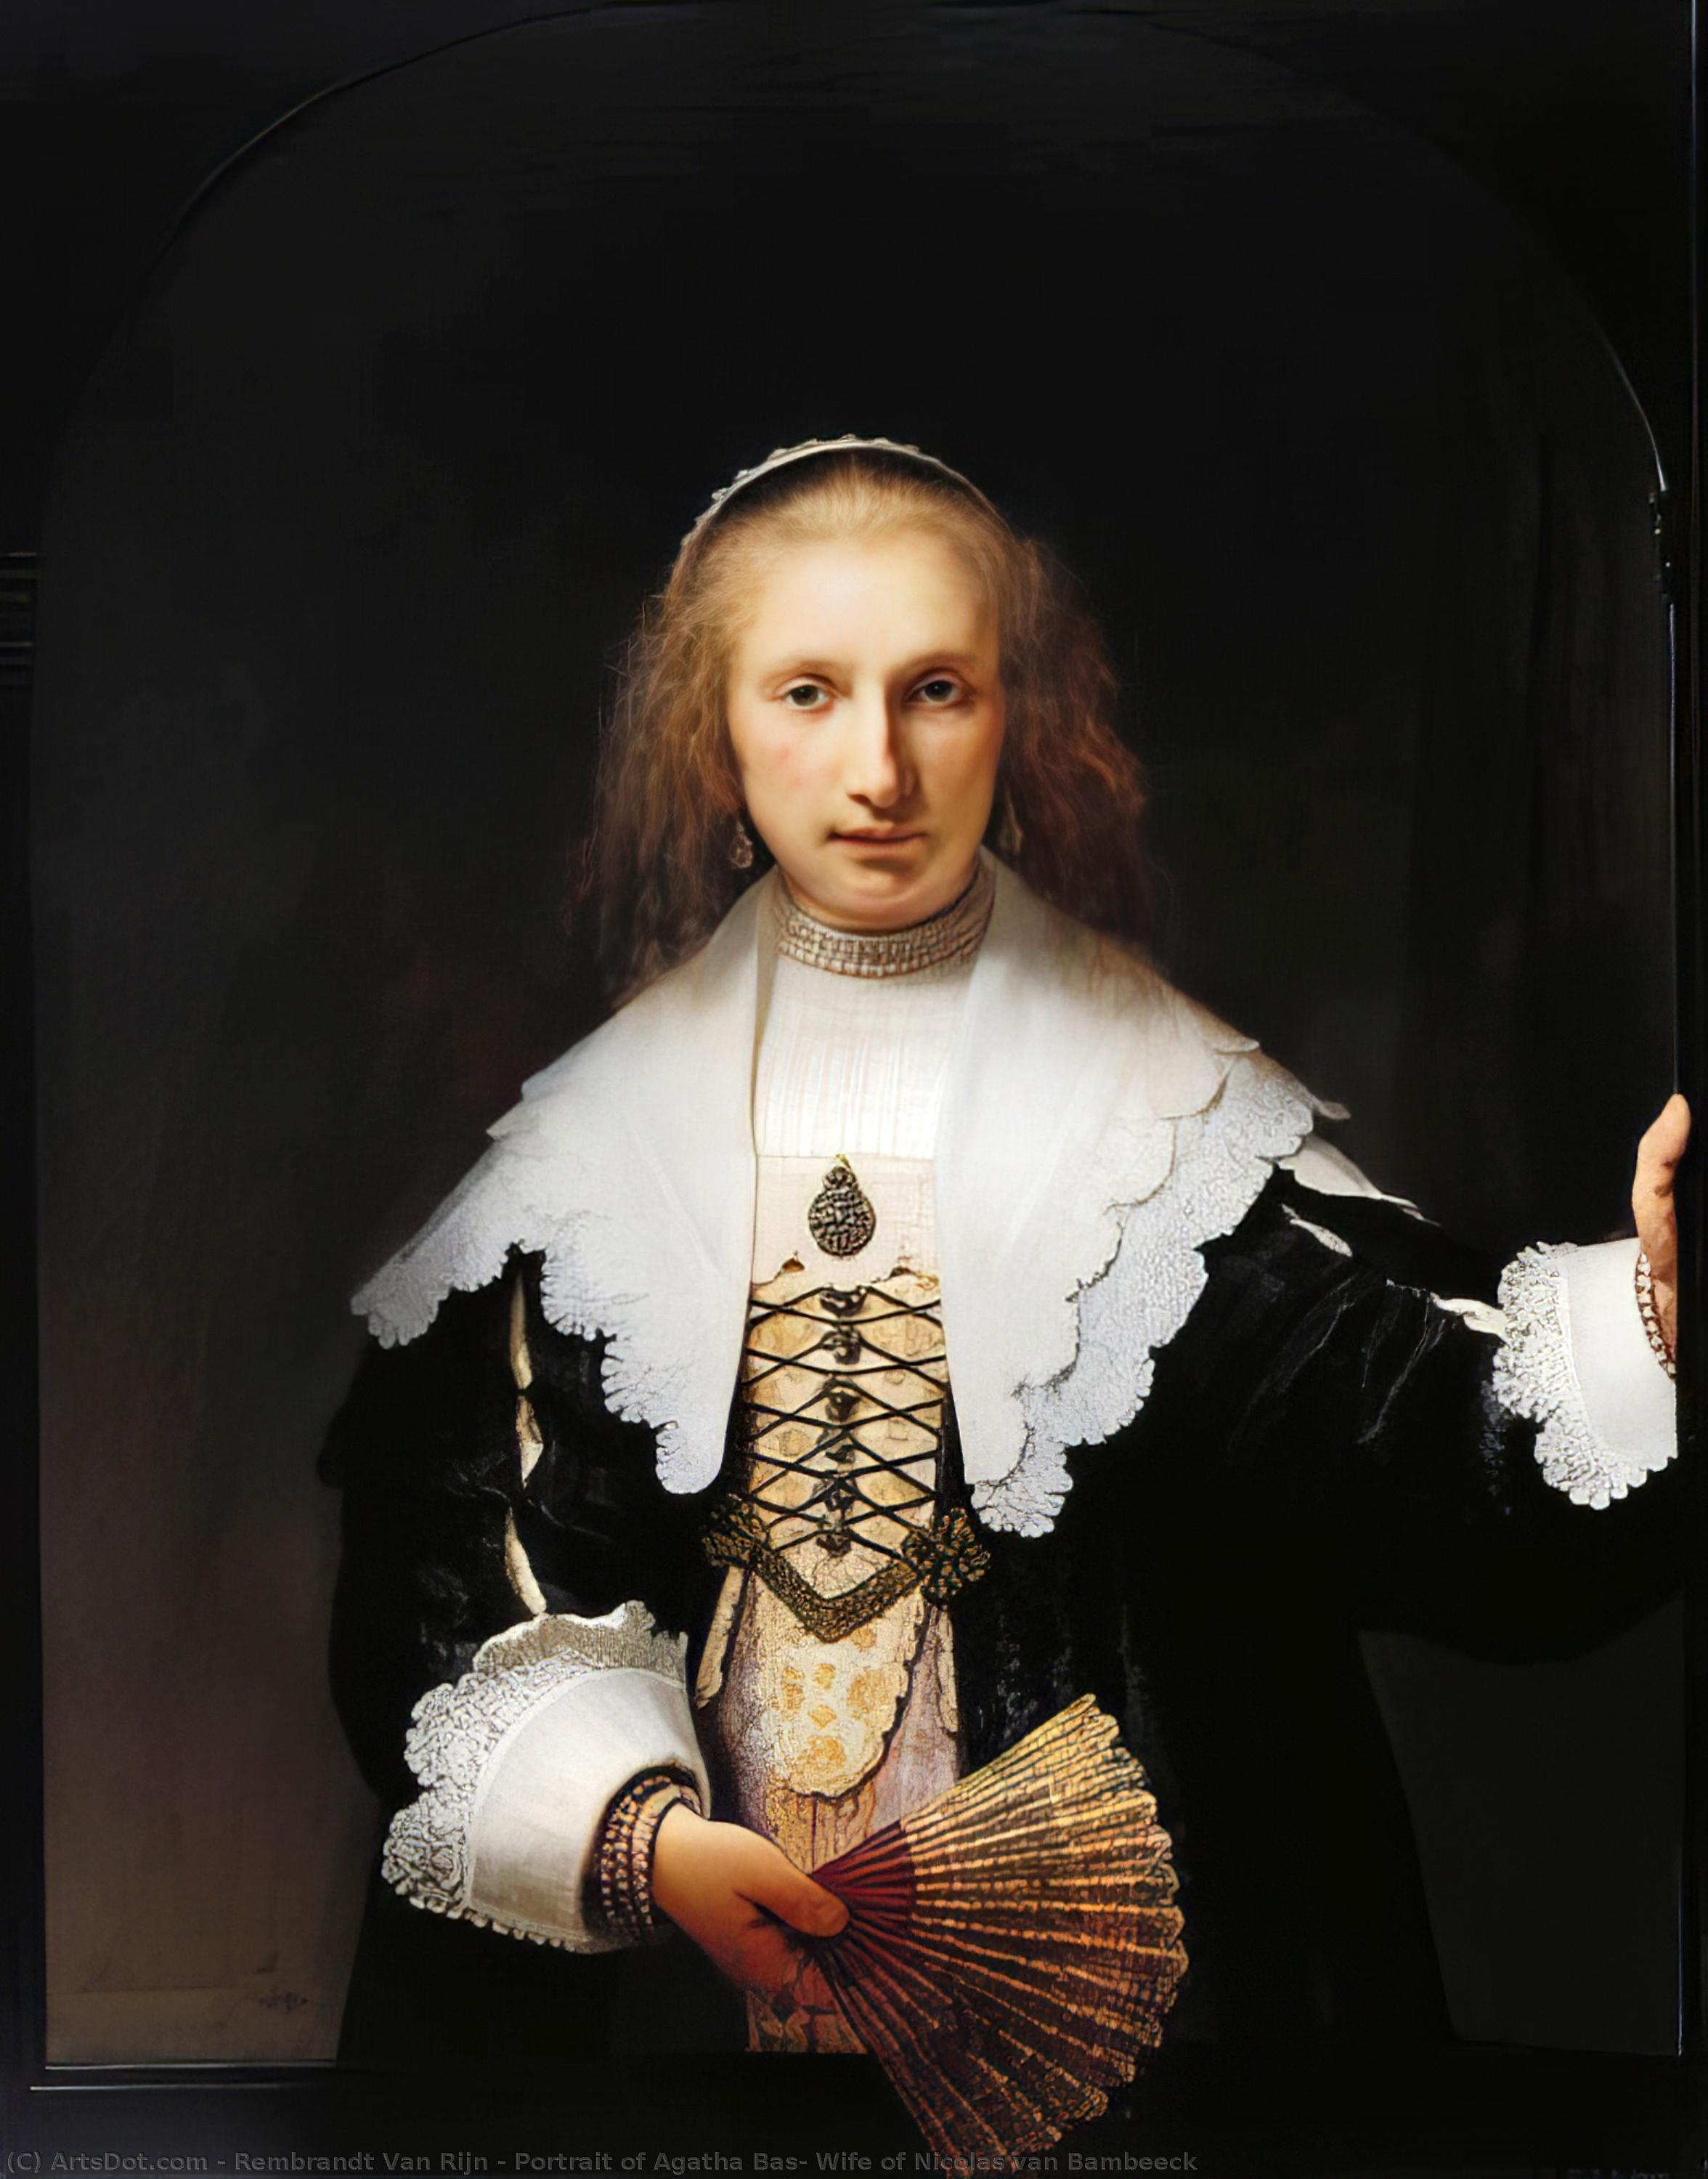 WikiOO.org - Encyclopedia of Fine Arts - Schilderen, Artwork Rembrandt Van Rijn - Portrait of Agatha Bas, Wife of Nicolas van Bambeeck